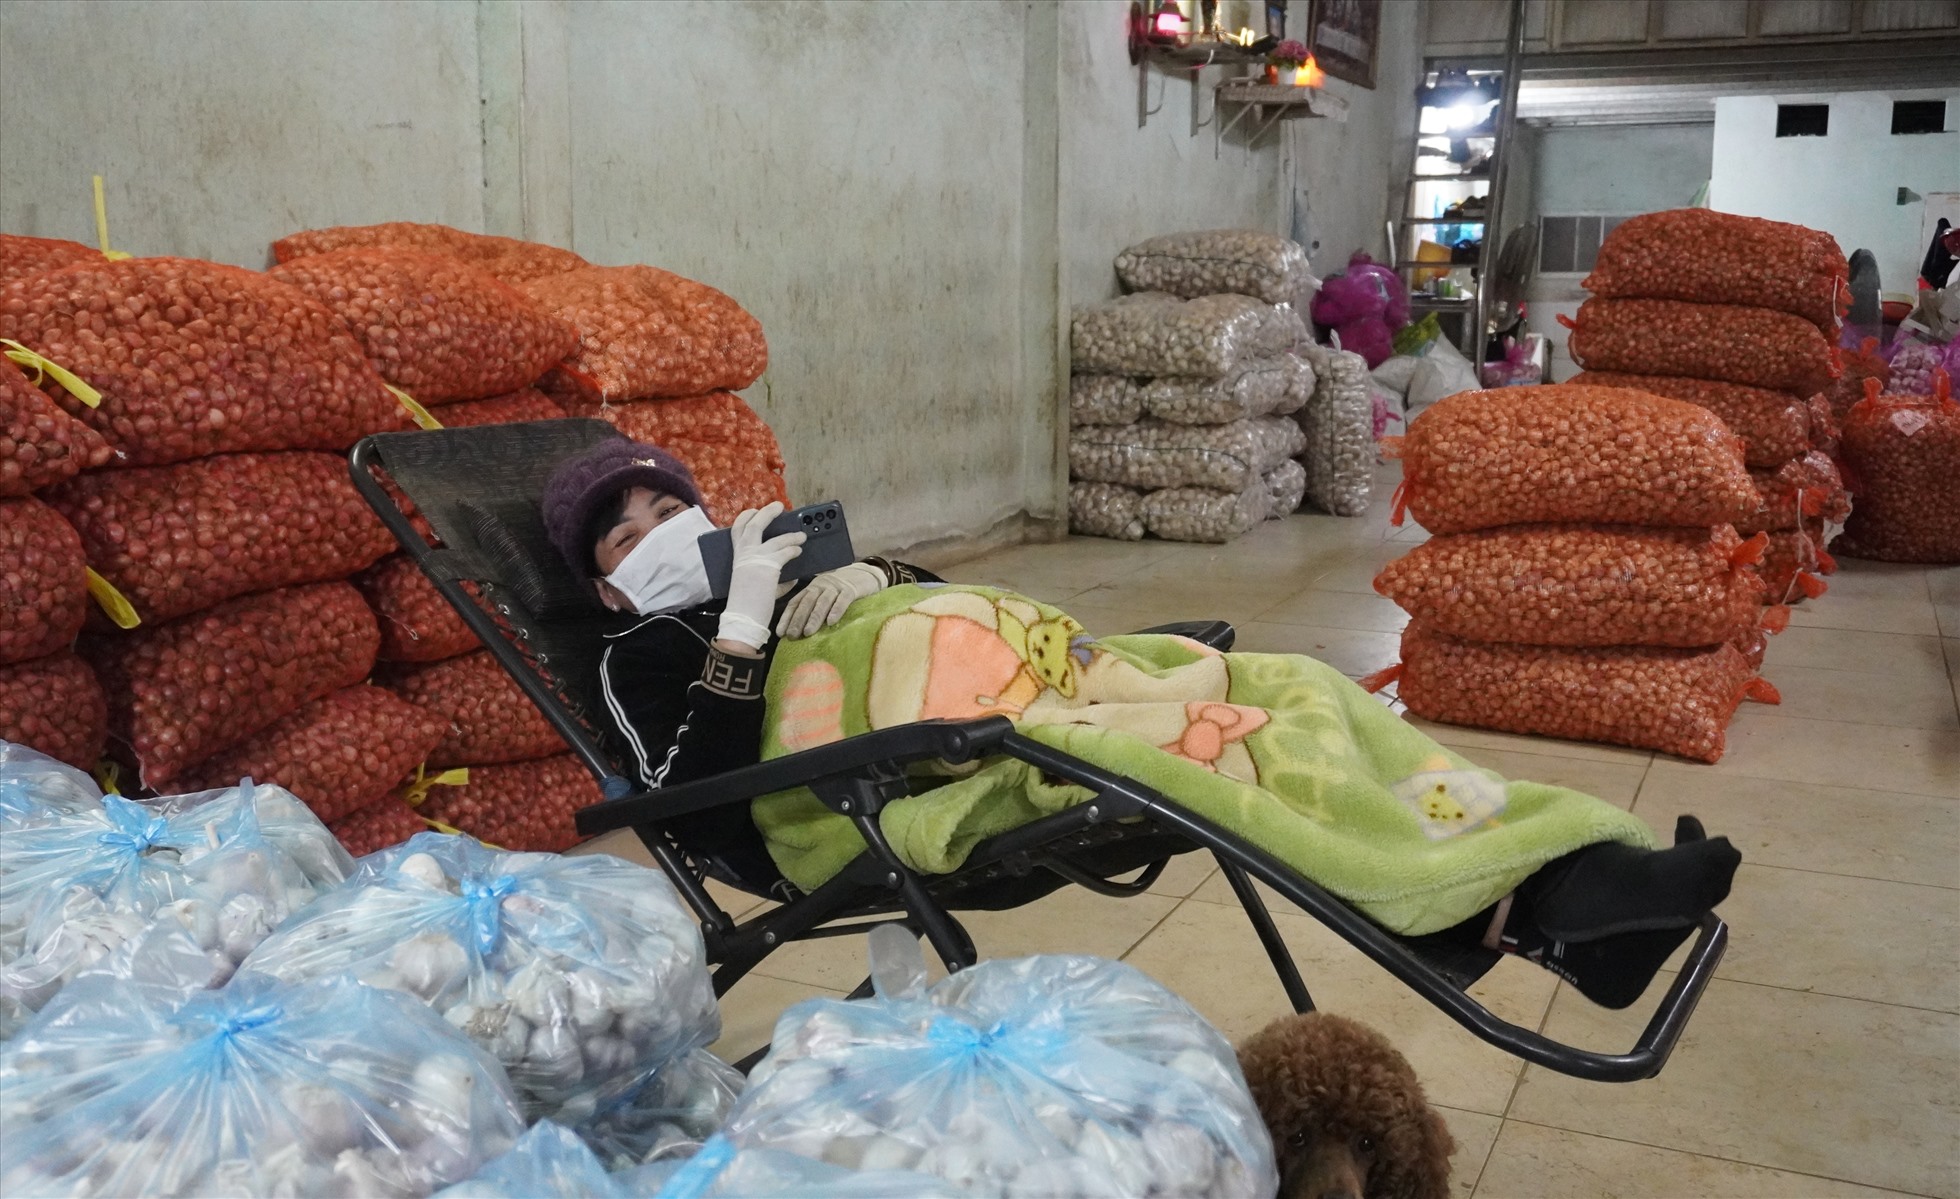 Các tiểu thương buôn bán tại chợ đầu mối Đông Hương co ro trong giá rét, dùng chăn quấn quanh người, ngồi chờ khách đến mua hàng. Ảnh: Quách Du